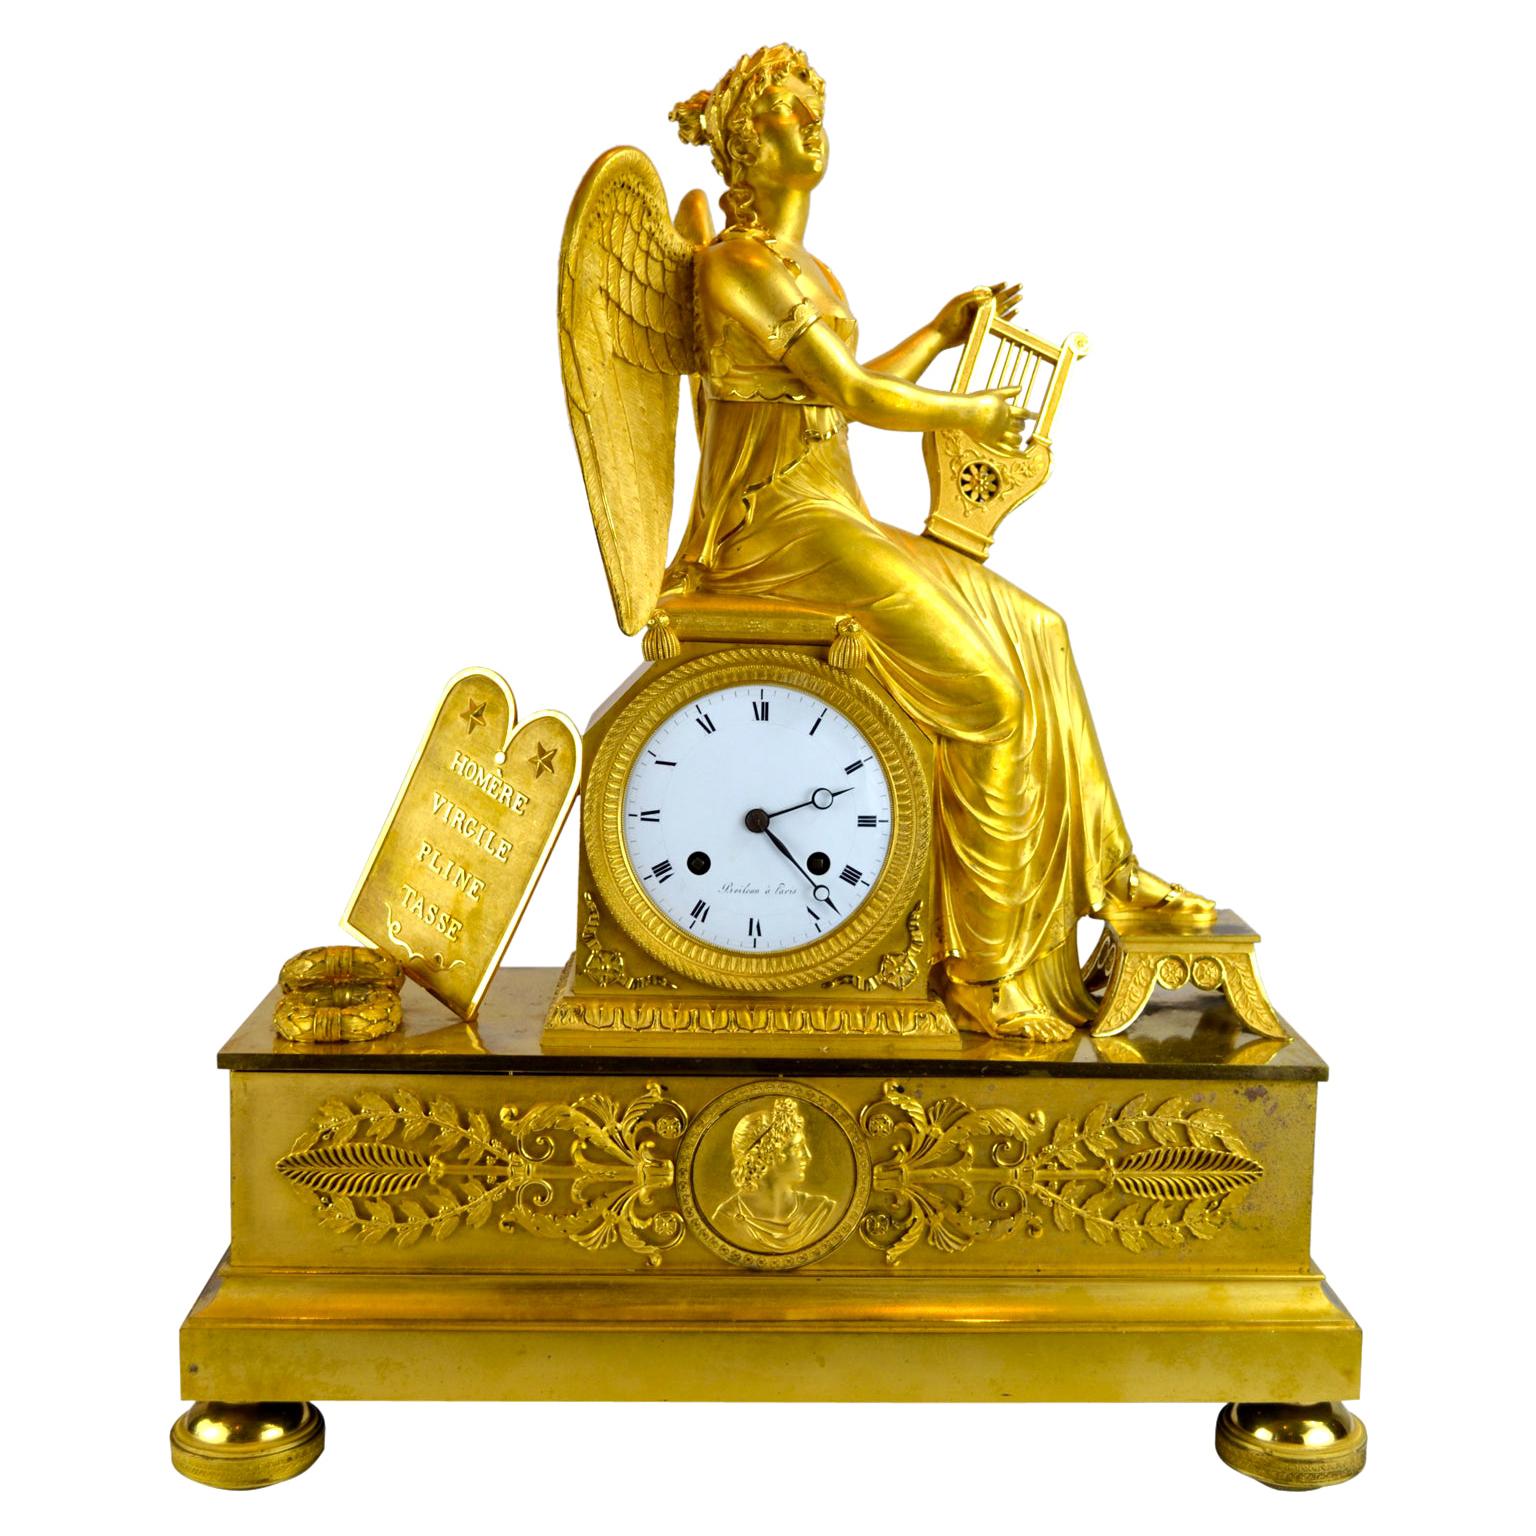 Une horloge allégorique en bronze doré de l'Empire français représentant Clio, la muse grecque de l'histoire et de la musique. Clio est représentée ici, assise sur le socle de l'horloge, jouant de la harpe. A gauche du cadran de l'horloge sont